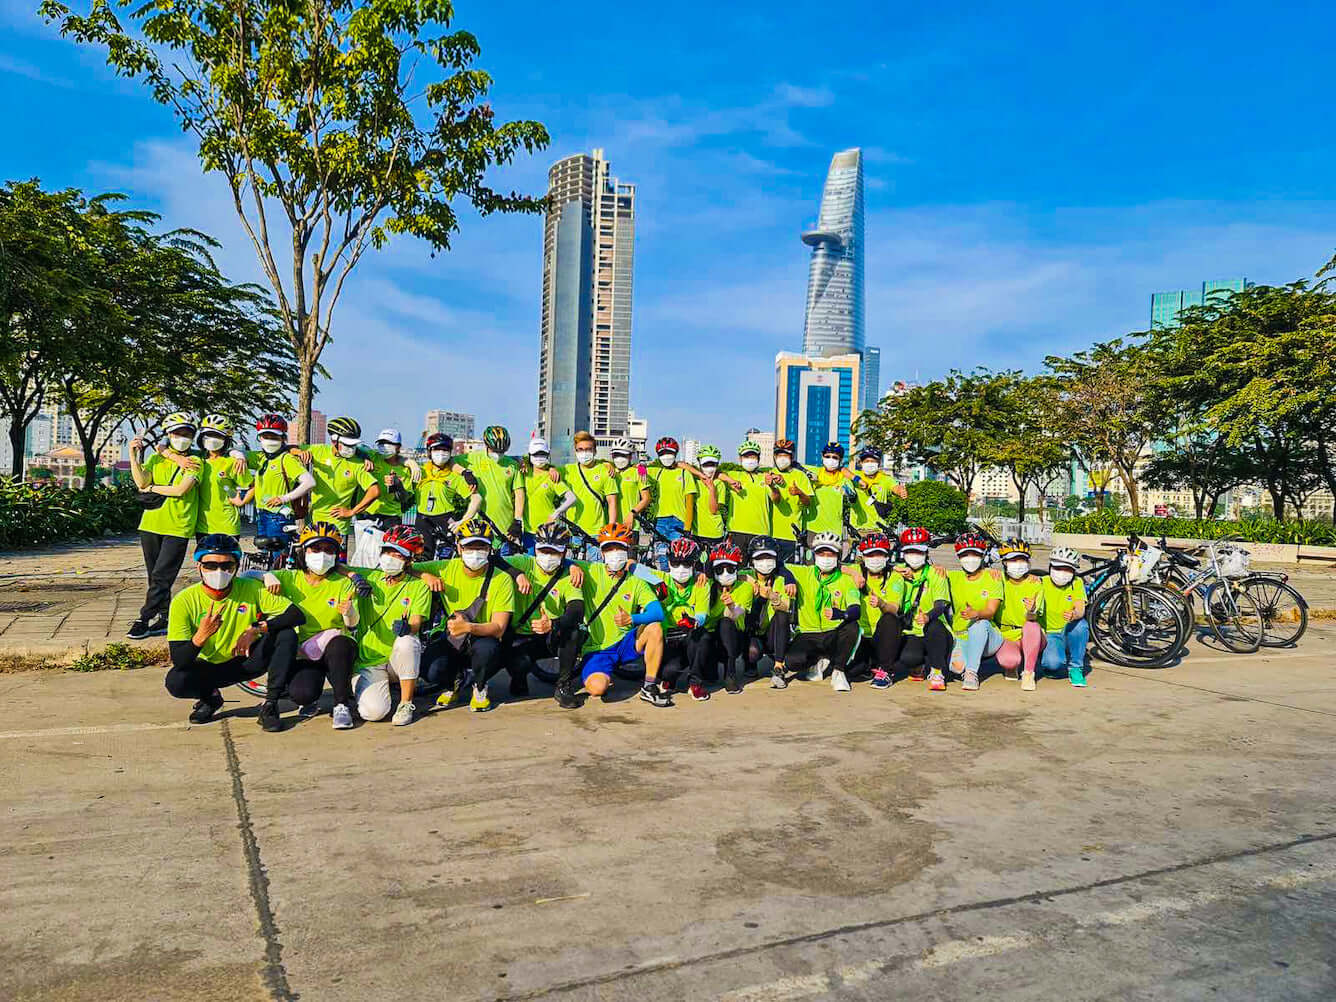 Biking Tour Saigon - Sự kiện hưởng ứng Kỷ niệm 26 năm thành lập Vietravel